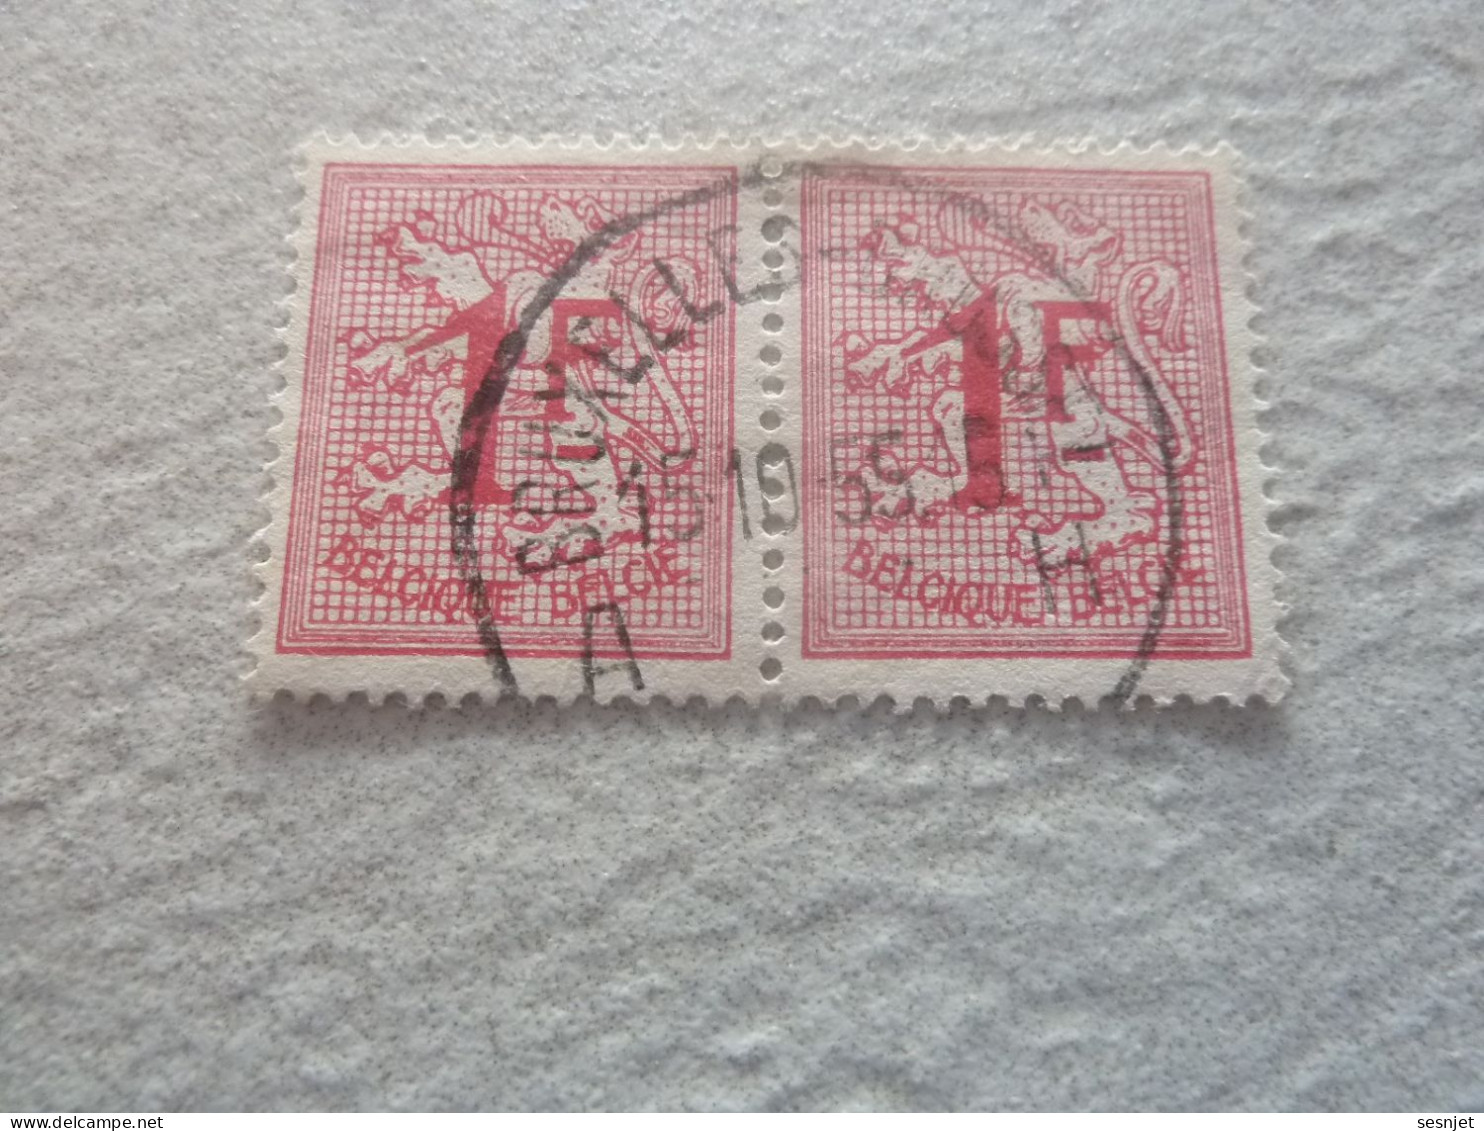 Belgique - Lion - 1f. - Rose - Double Oblitérés - Année 1950 - - Used Stamps